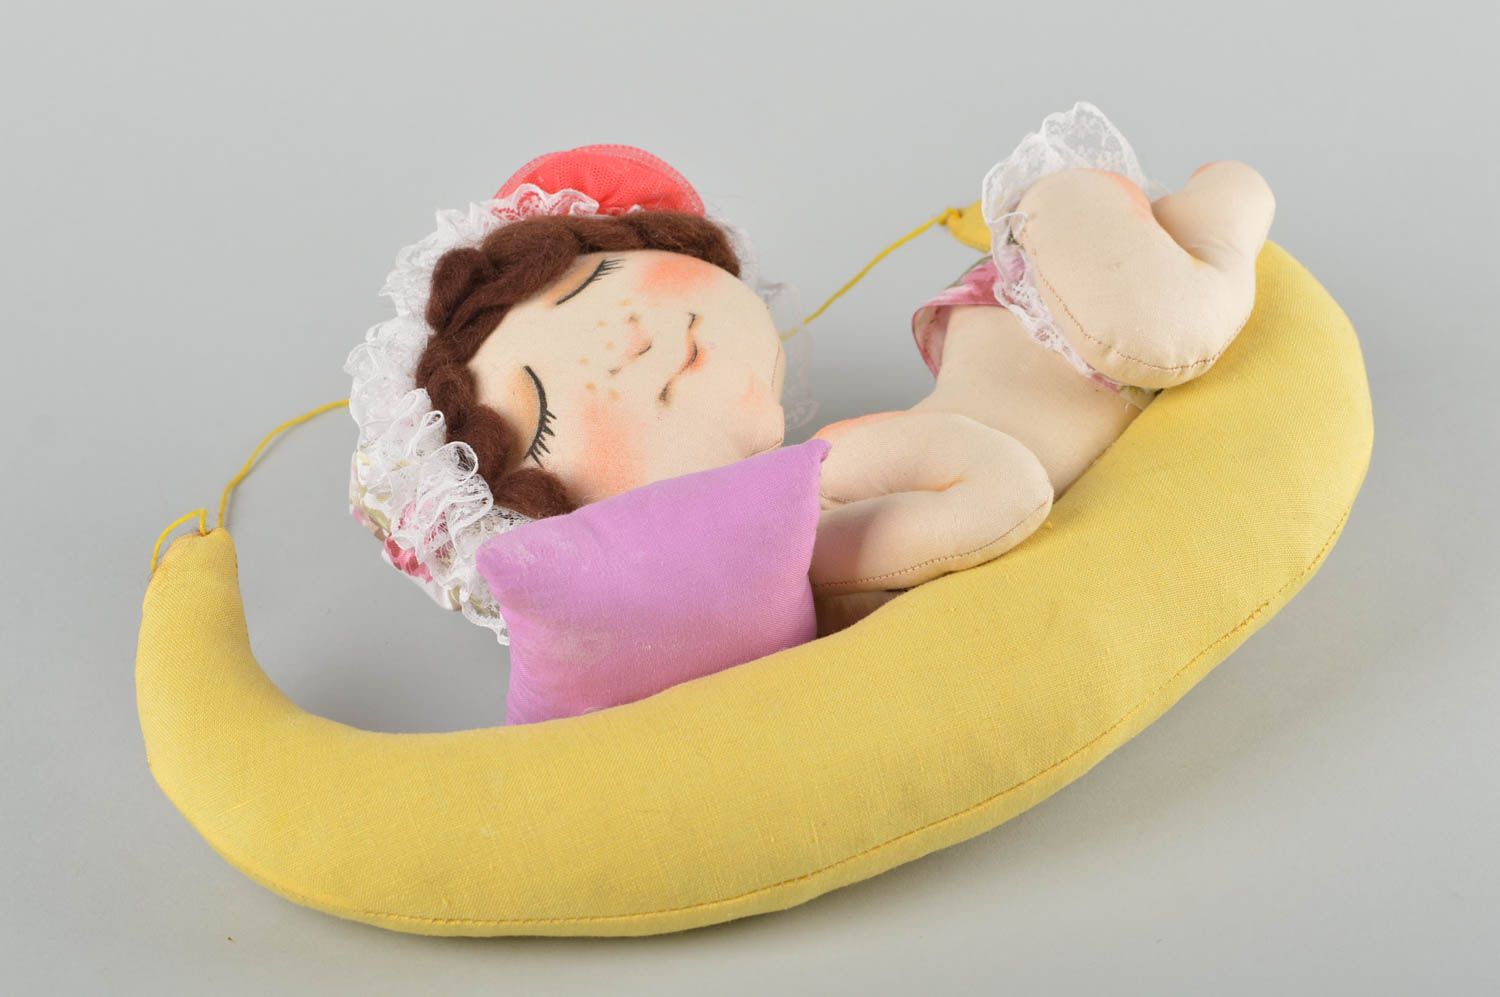 Handmade Textil Spielzeug Deko Anhänger Stoff Kuscheltier Designer Geschenk  foto 2